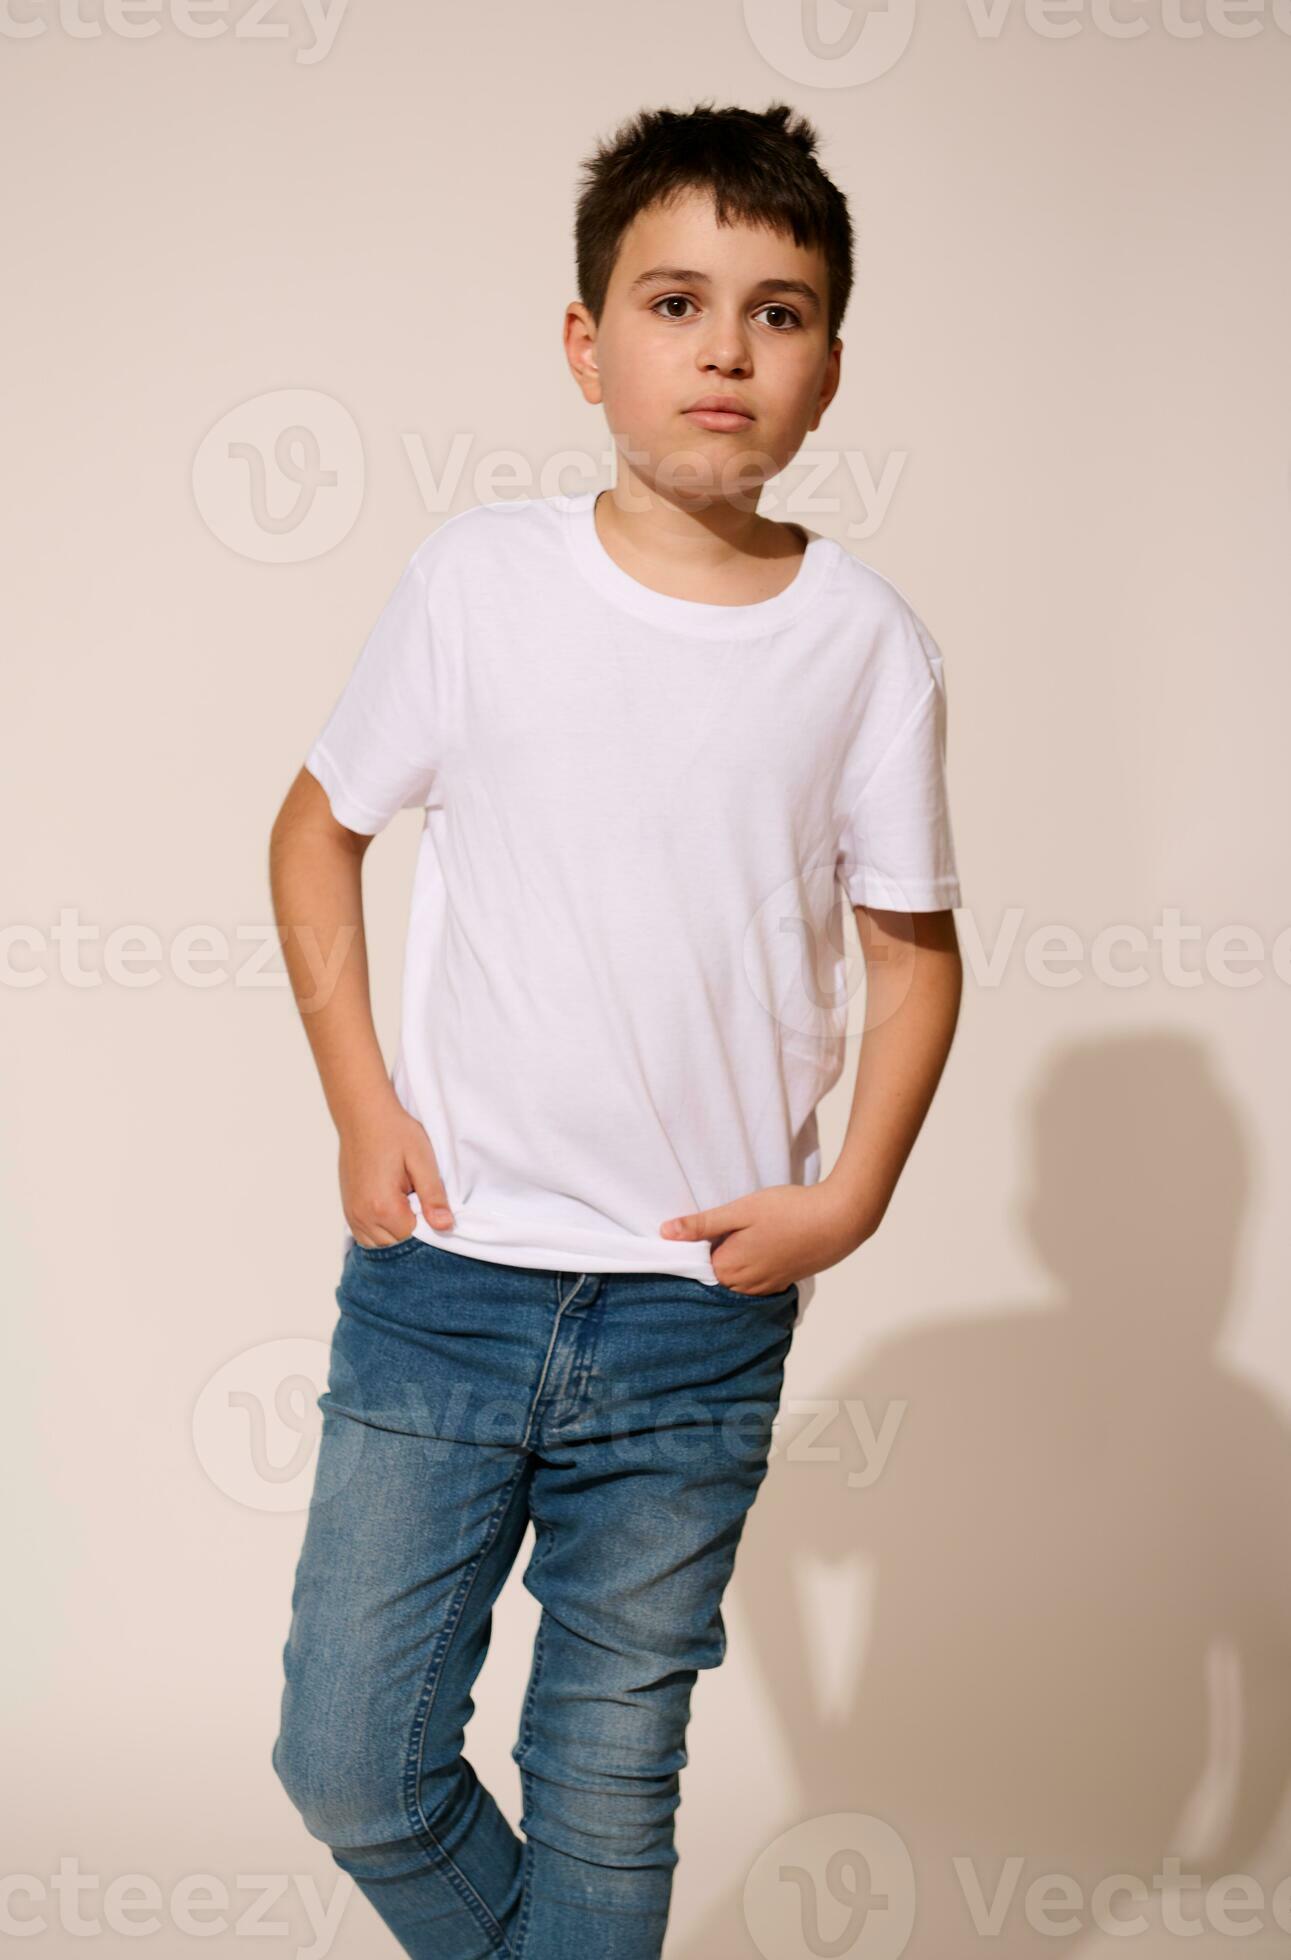 https://static.vecteezy.com/ti/photos-gratuite/p2/27051341-authentique-hispanique-adolescent-garcon-dans-blanc-t-shirt-et-bleu-jeans-en-mettant-le-sien-mains-dans-les-poches-pensivement-a-la-recherche-une-facon-photo.jpg